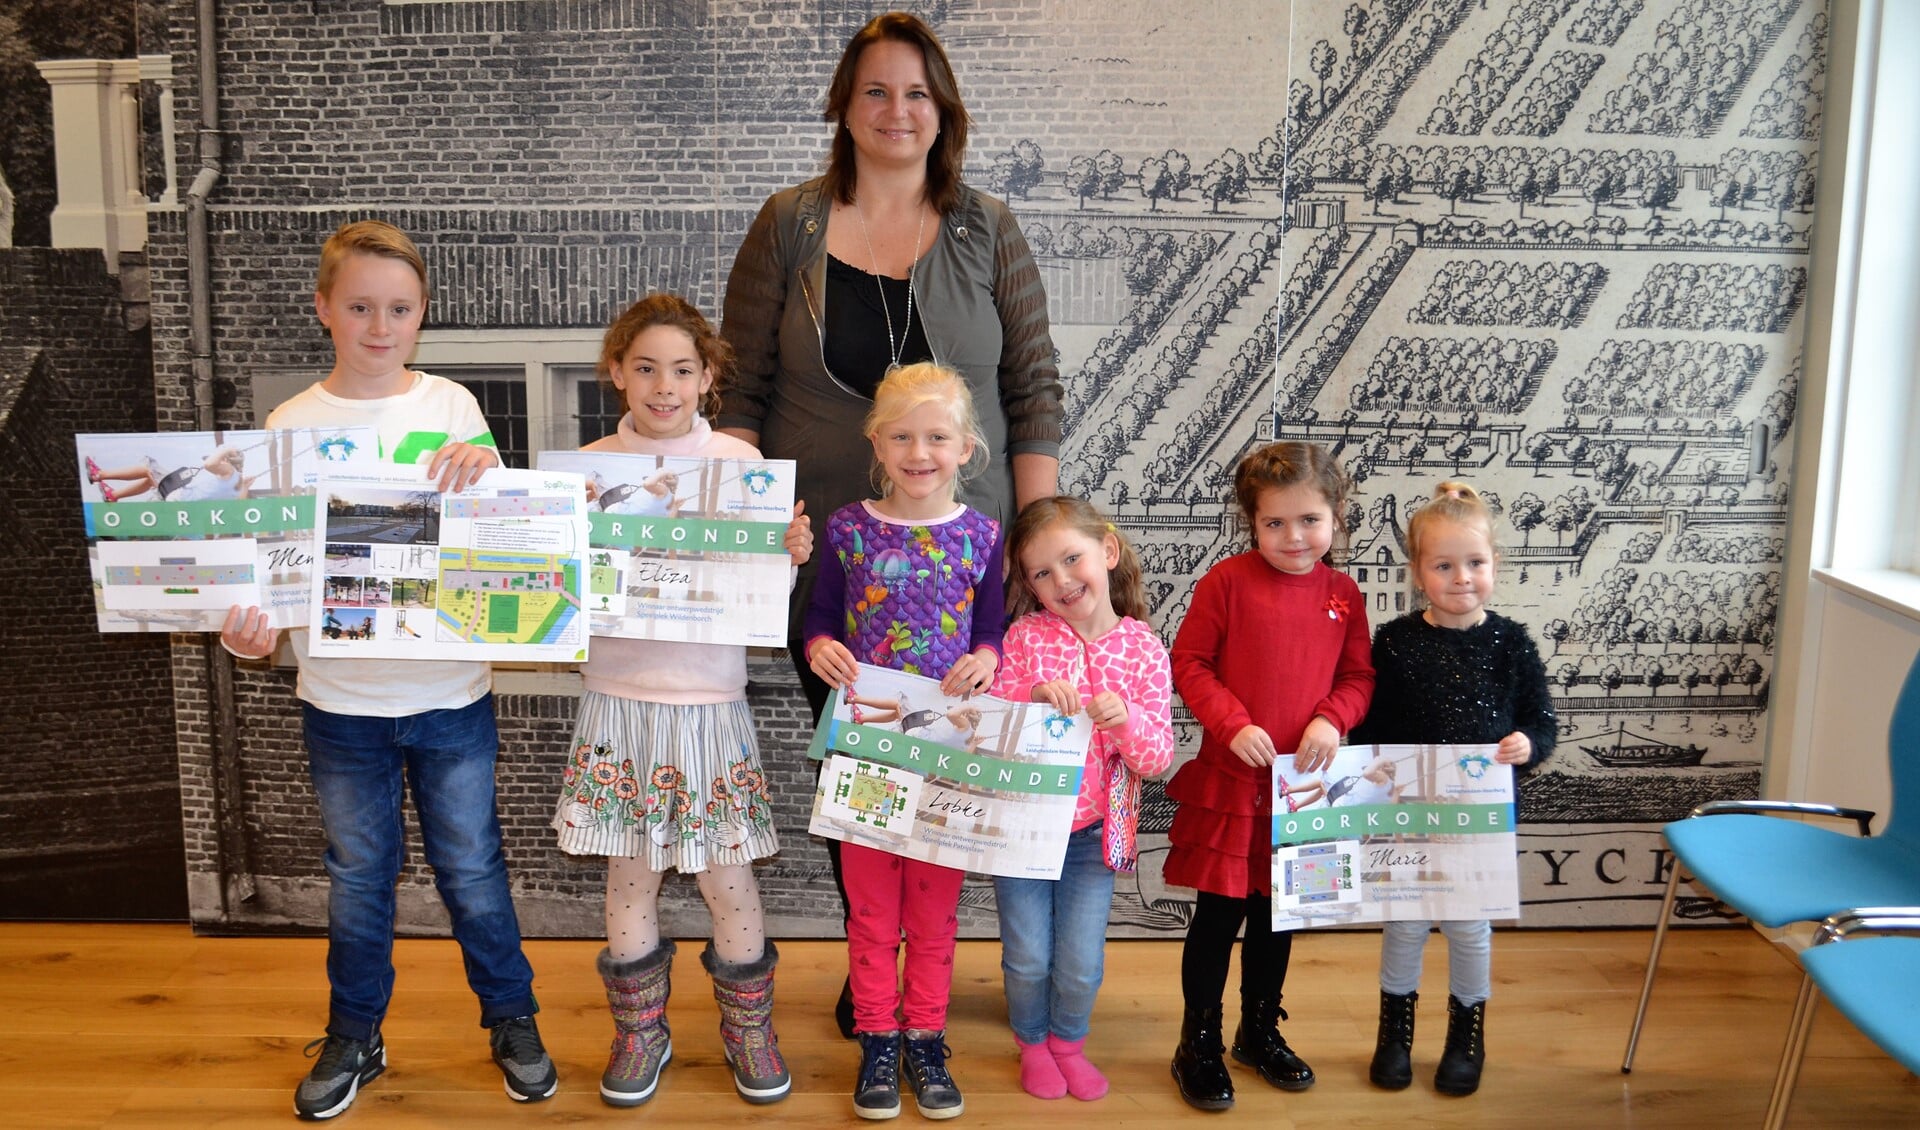 De kinderen kregen een oorkonde uitgereikt (tekst/foto: Inge Koot).